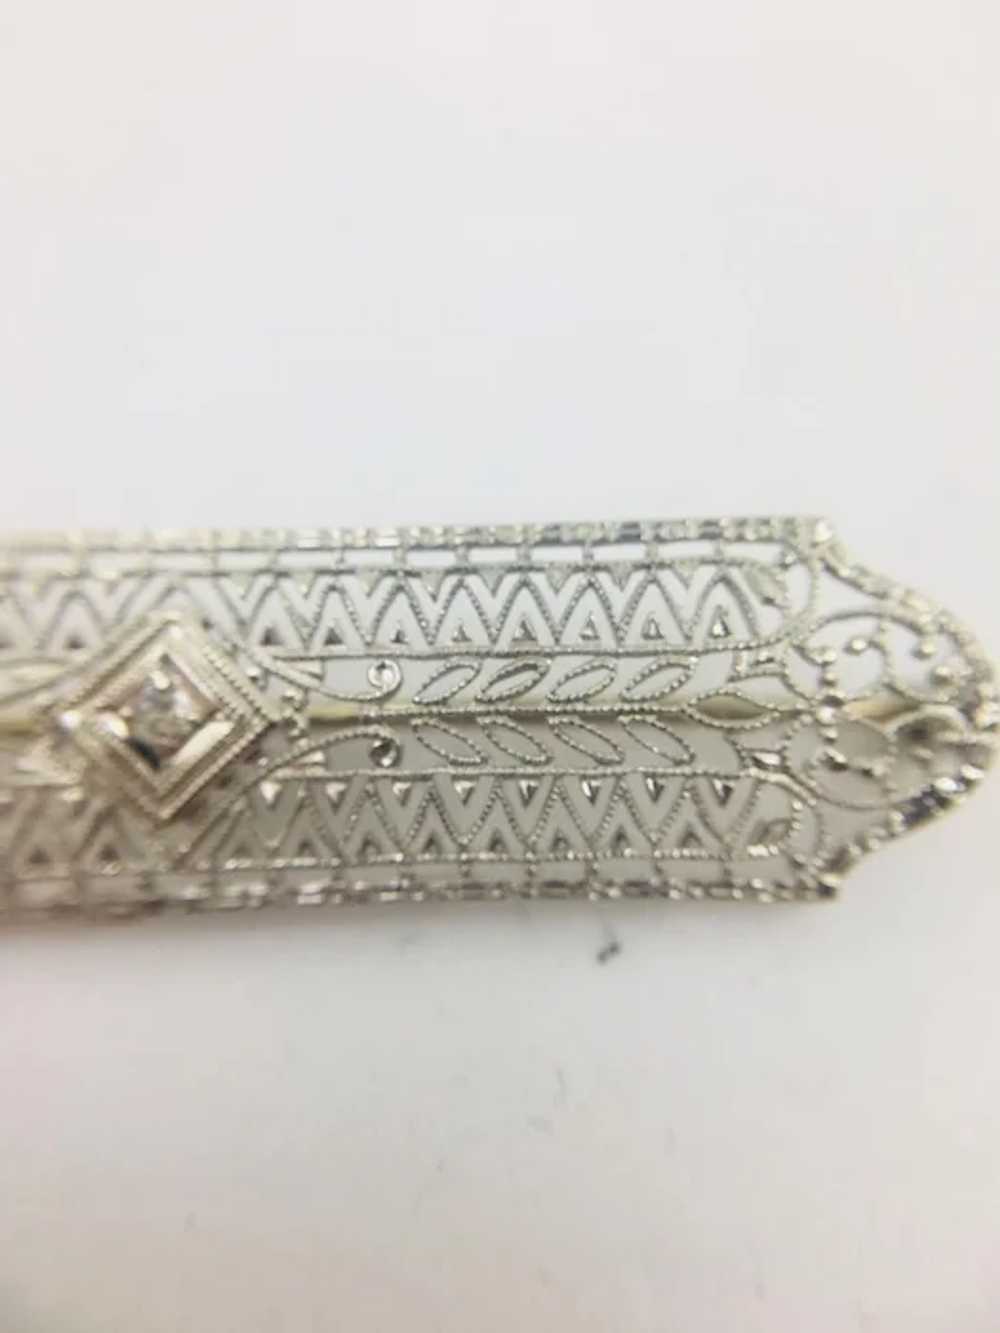 10K WG Vintage Repro Diamond Pin - image 3